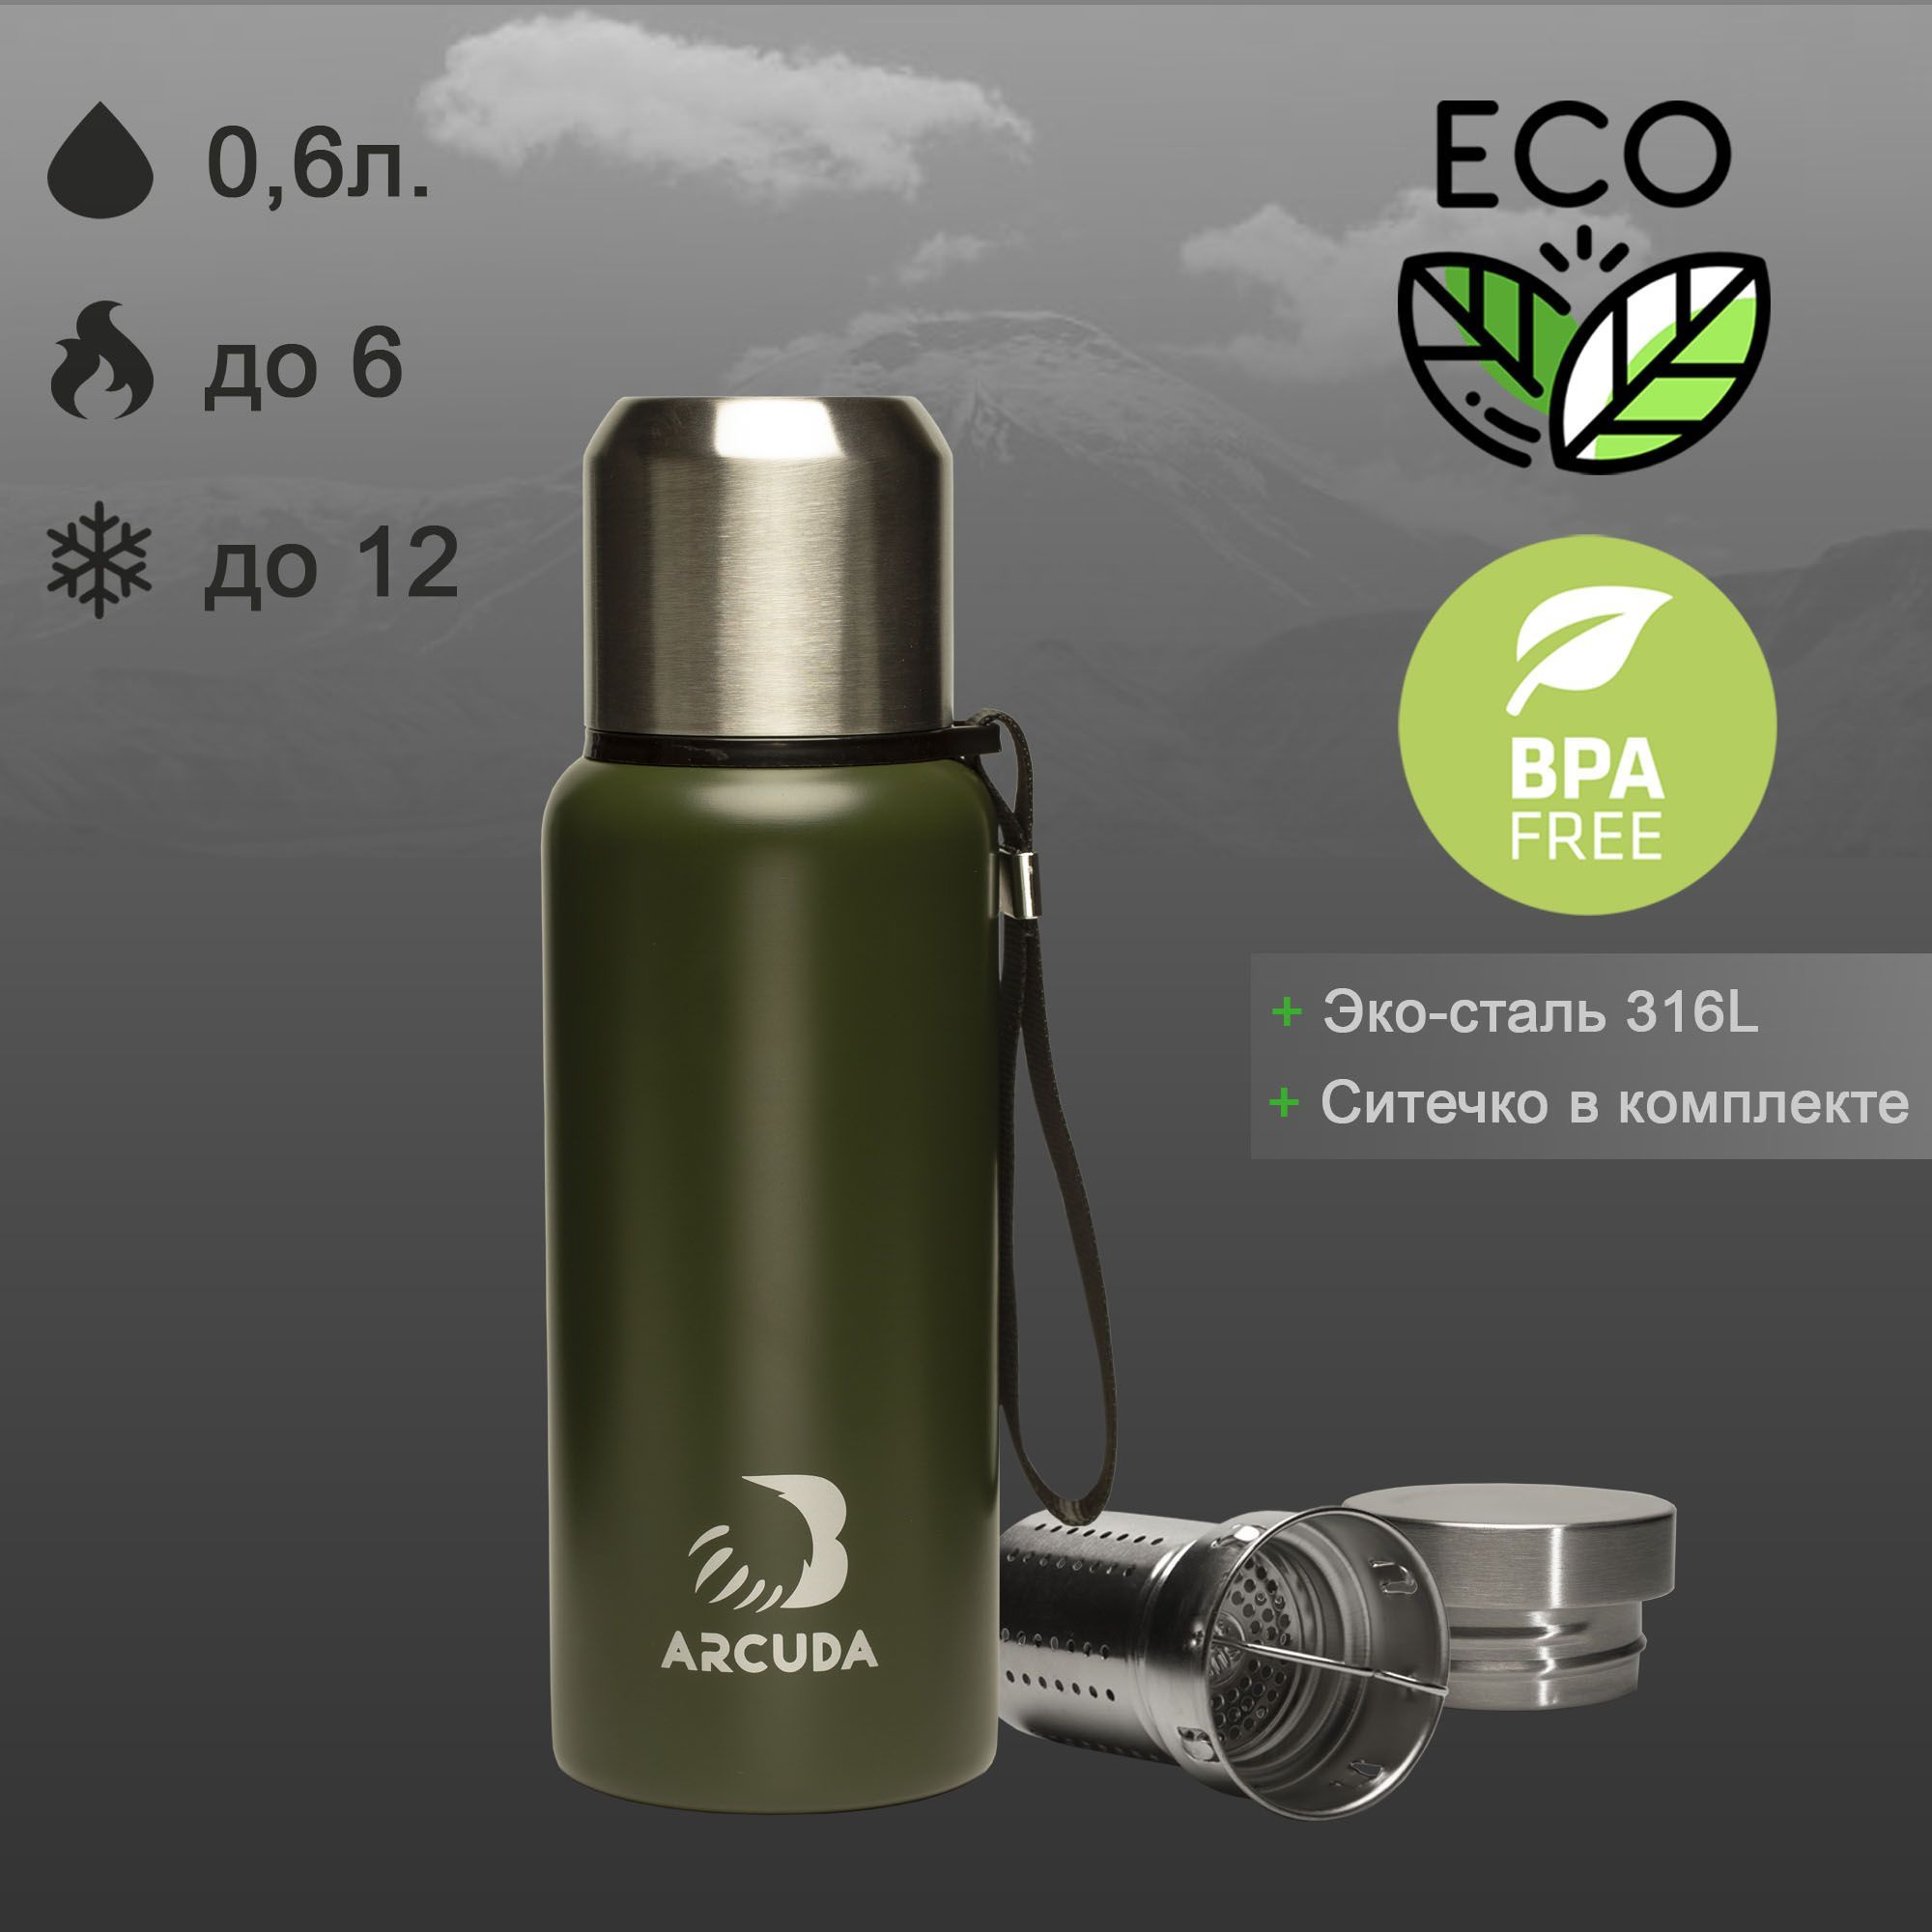 Термос ARCUDA ARC-Z85 Eco seria, крышка-чашка, 0.6 литр, темно-зеленый